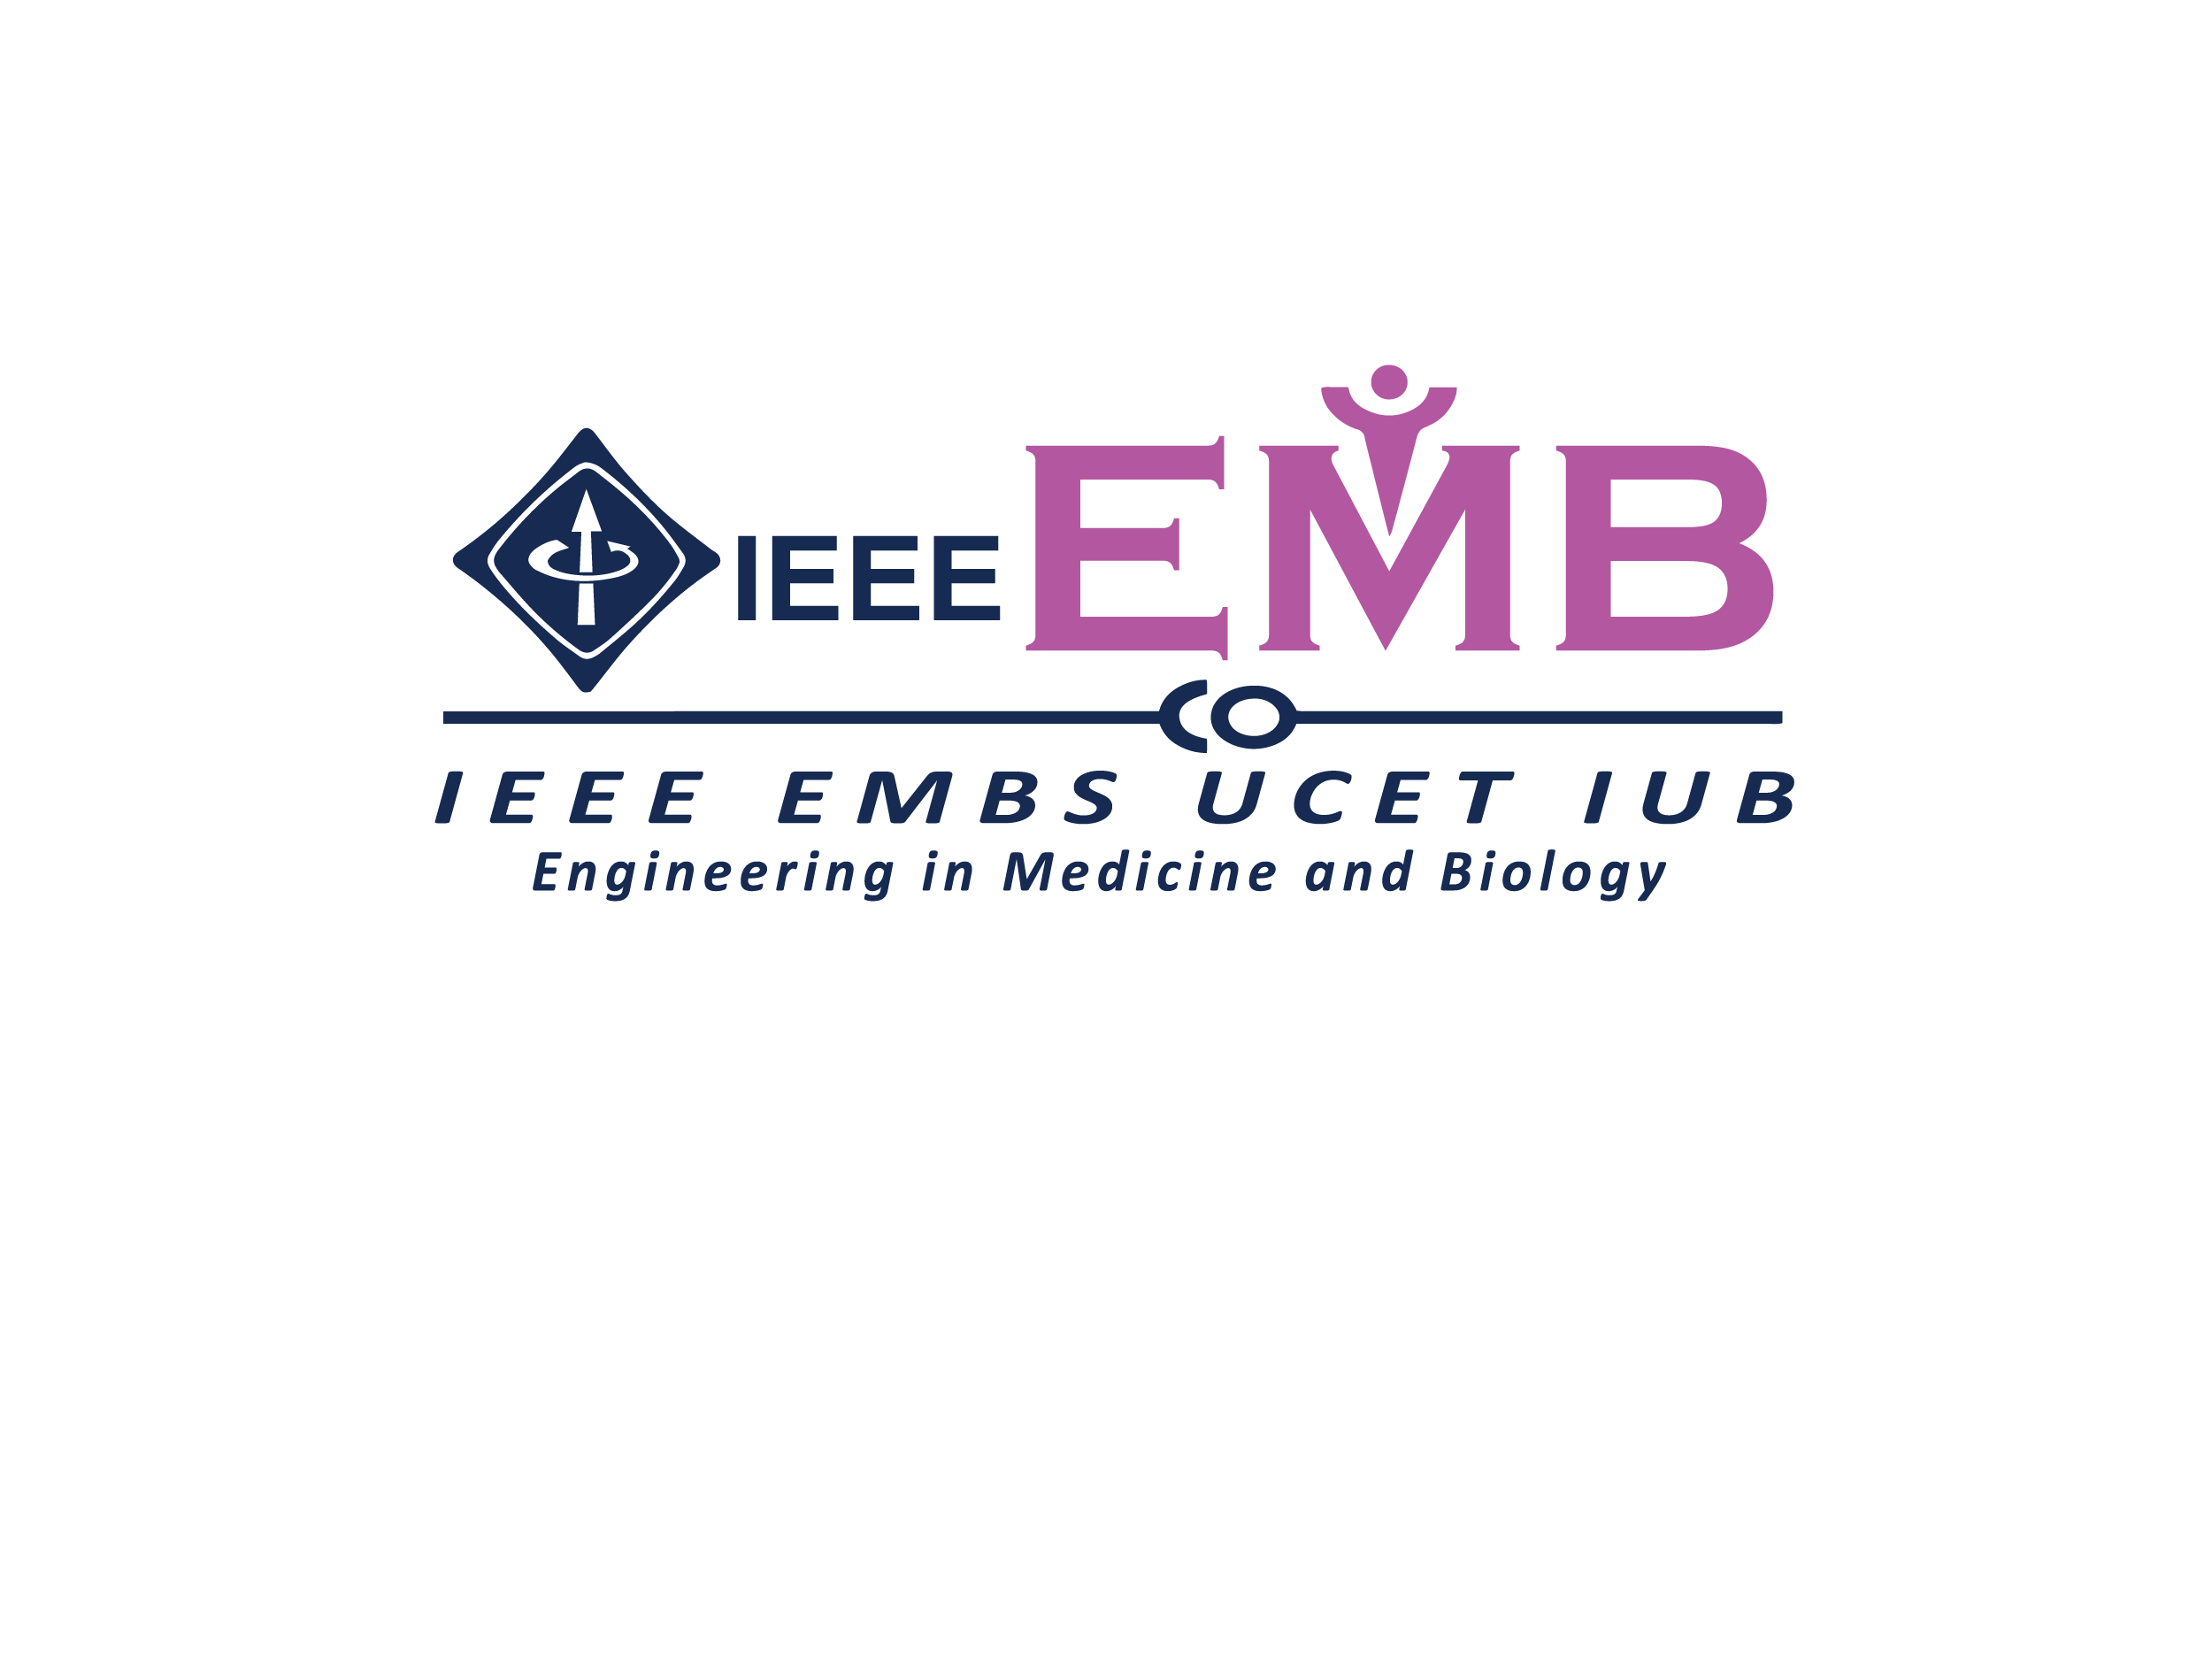 IEEE EMBS UCET IUB